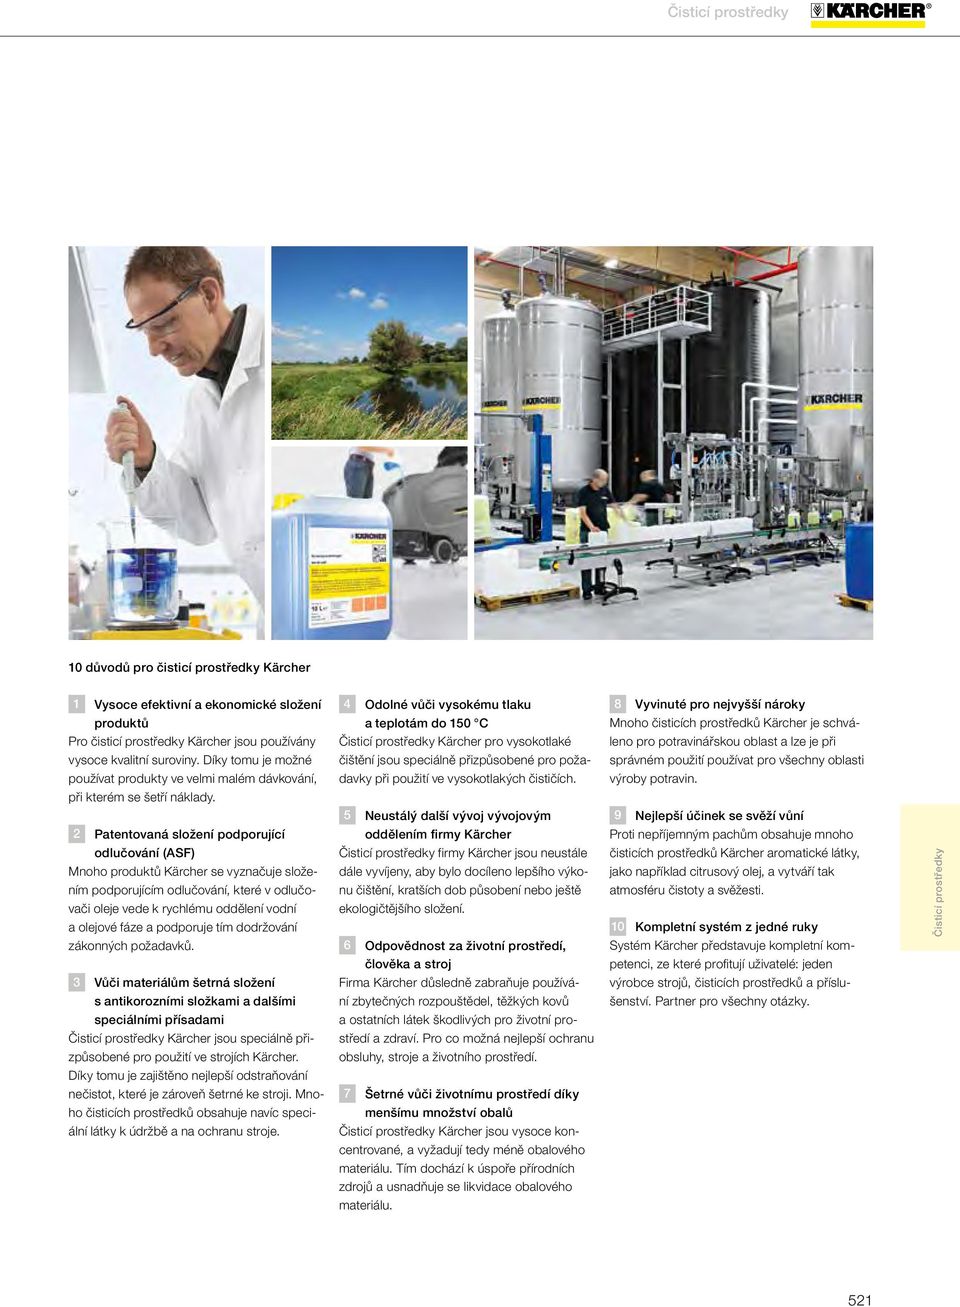 Patentovaná složení podporující odlučování (ASF) Mnoho produktů Kärcher se vyznačuje složením podporujícím odlučování, které v odlučovači oleje vede k rychlému oddělení vodní a olejové fáze a